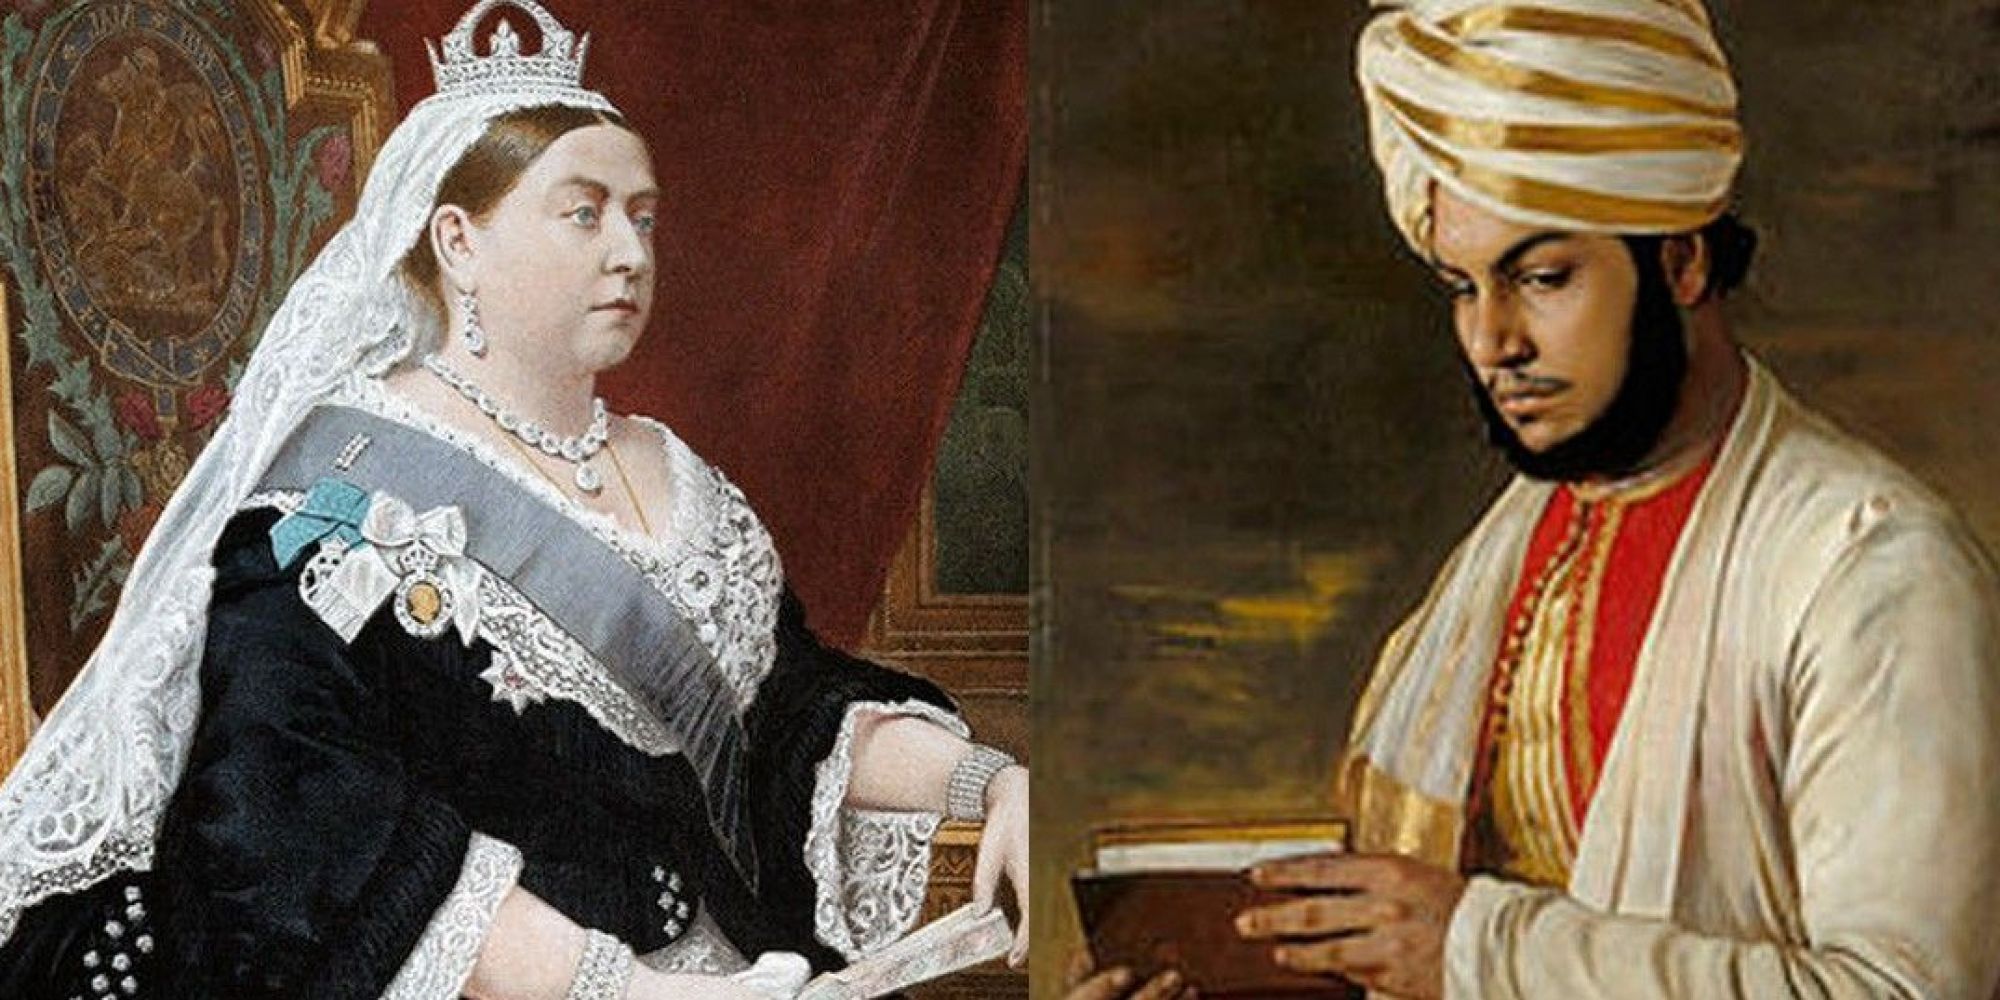 نتيجة بحث الصور عن الملكة فيكتوريا وعبدالكريم